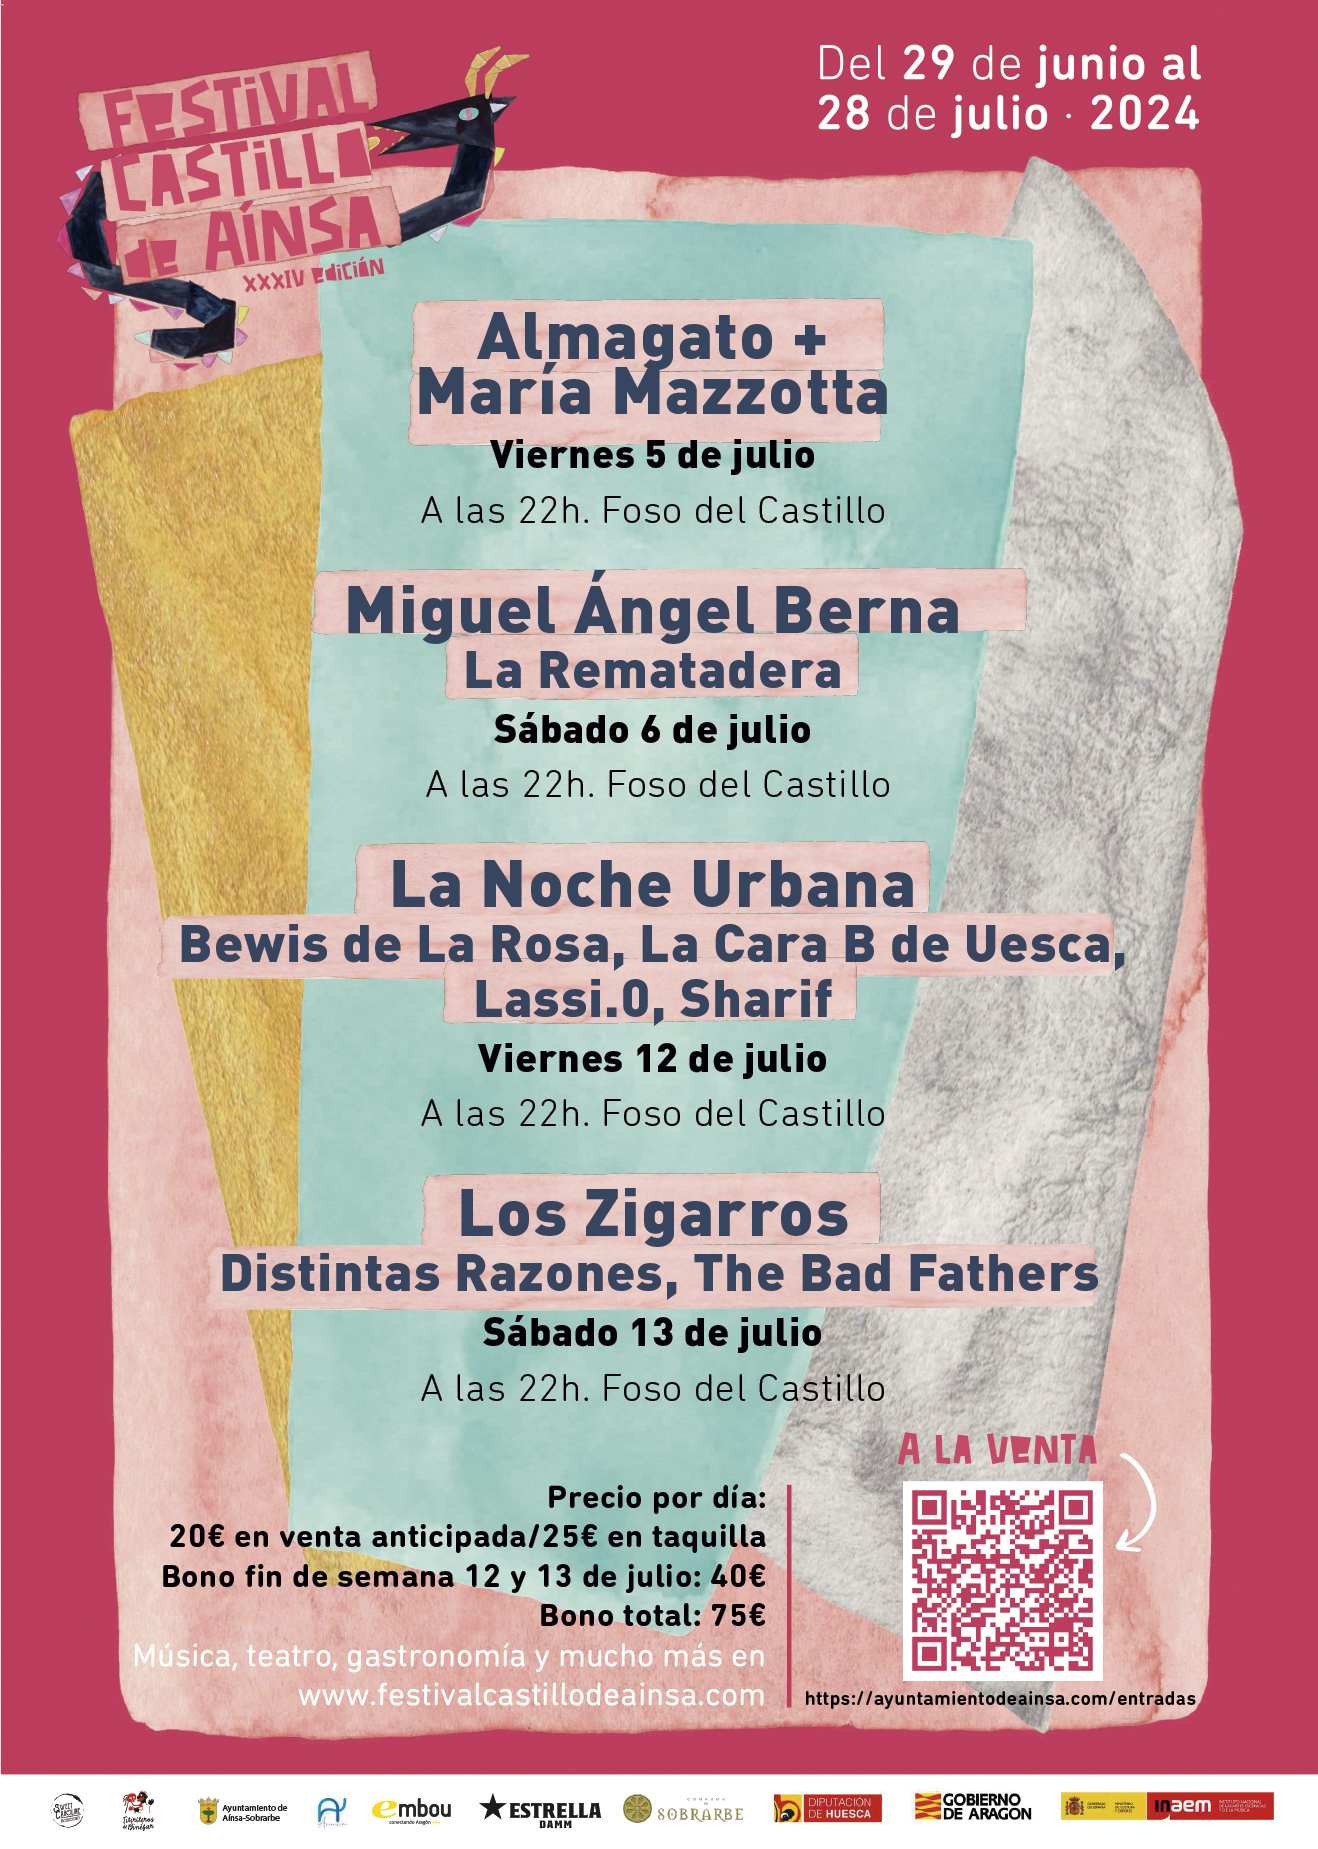 Cartel Festival Castillo de Ainsa 2024 - previo - no definitivo